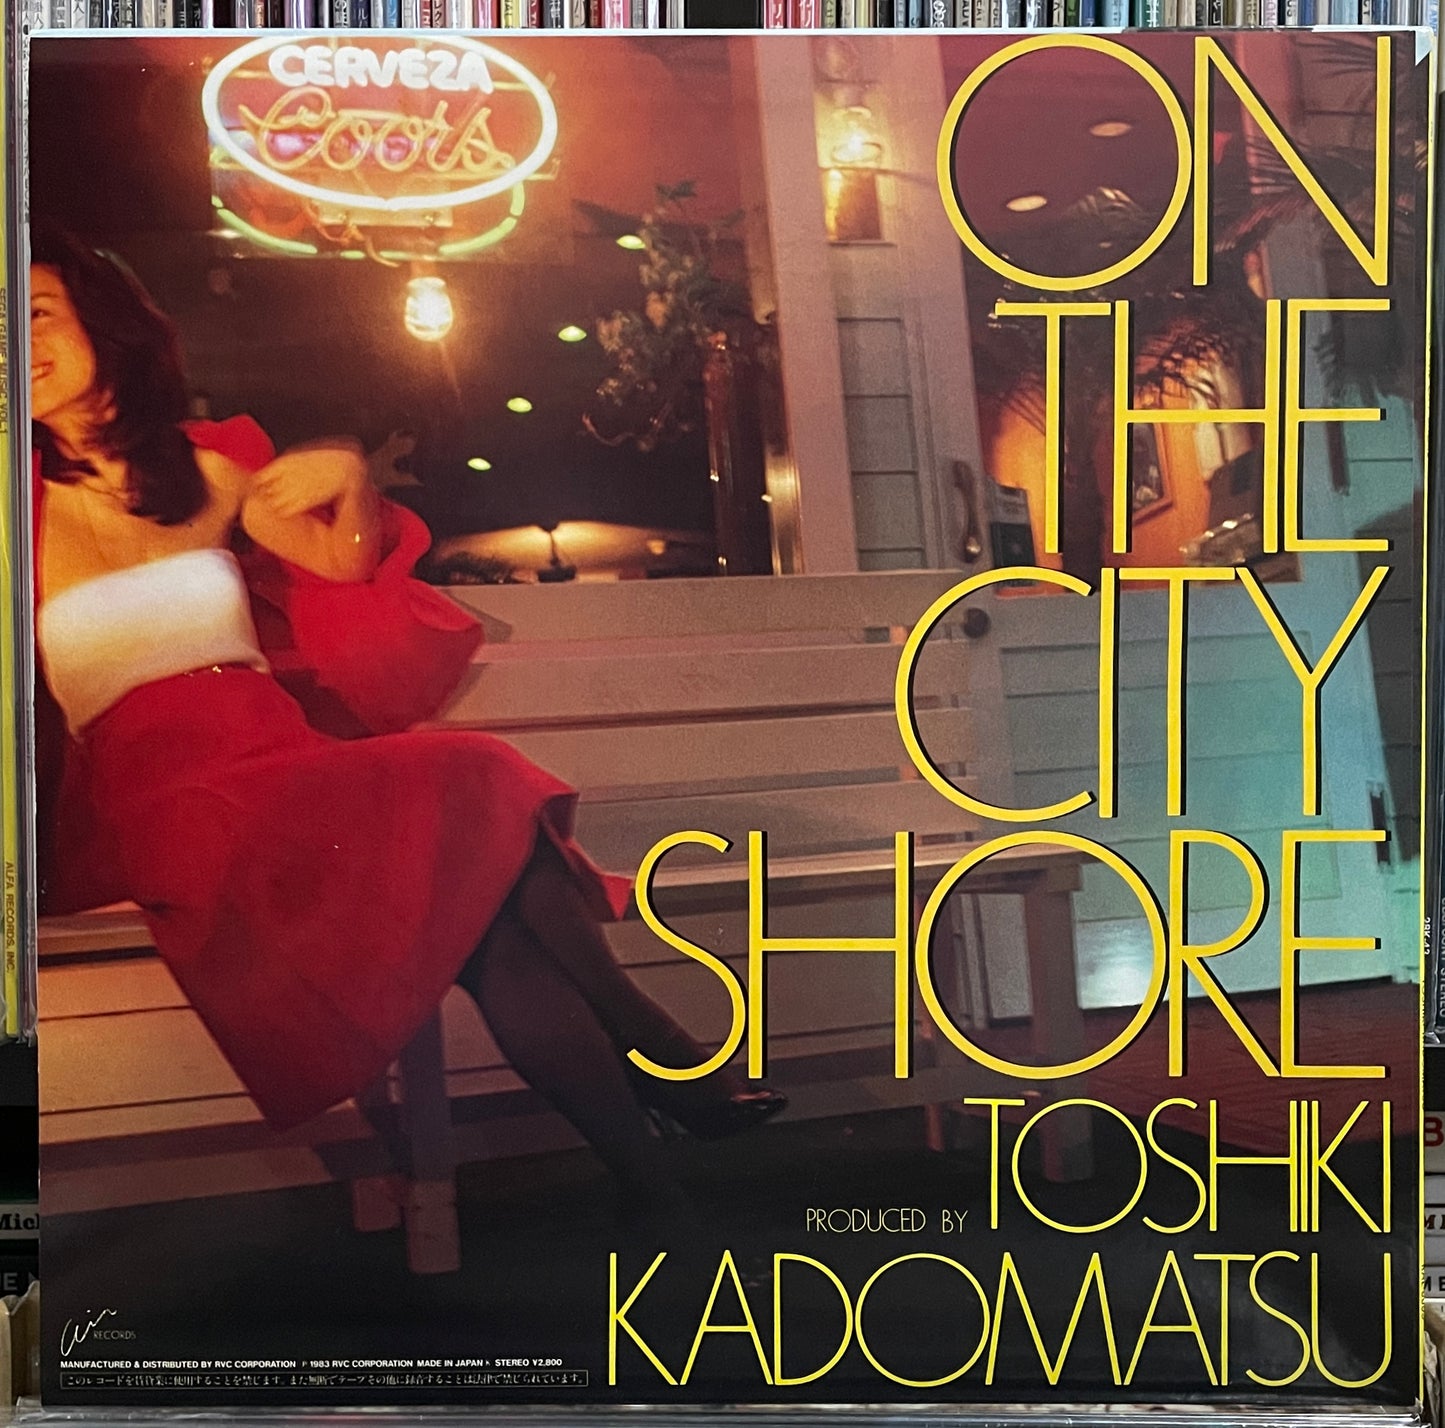 Toshiki Kadomatsu “On The City Shore” (1983)